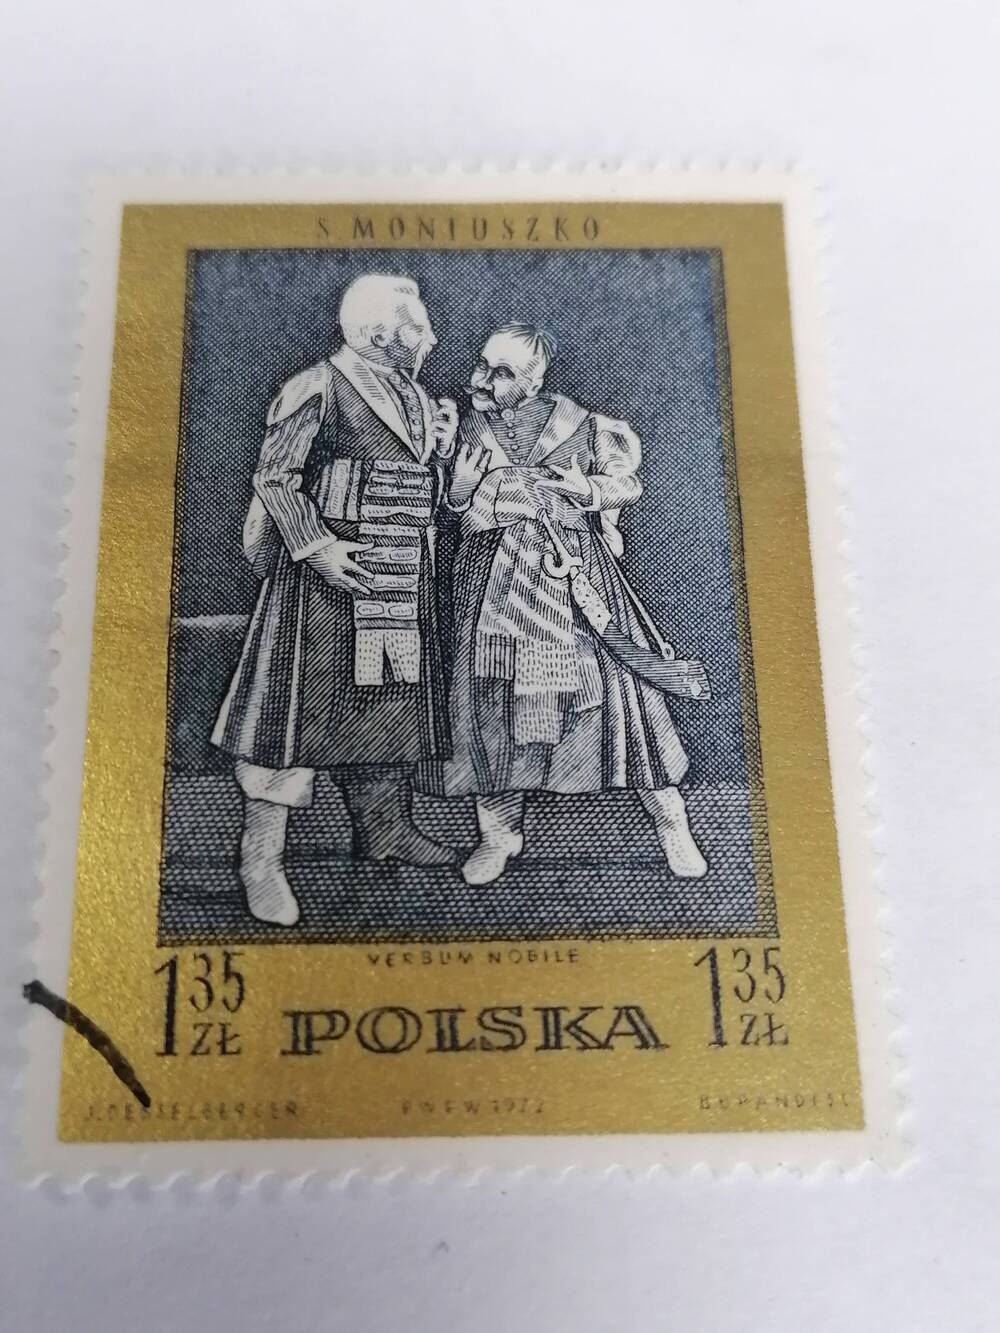 Марка почтовая гашеная, Polska,Польша,1972г,S.Monioszko  Verdum nodille